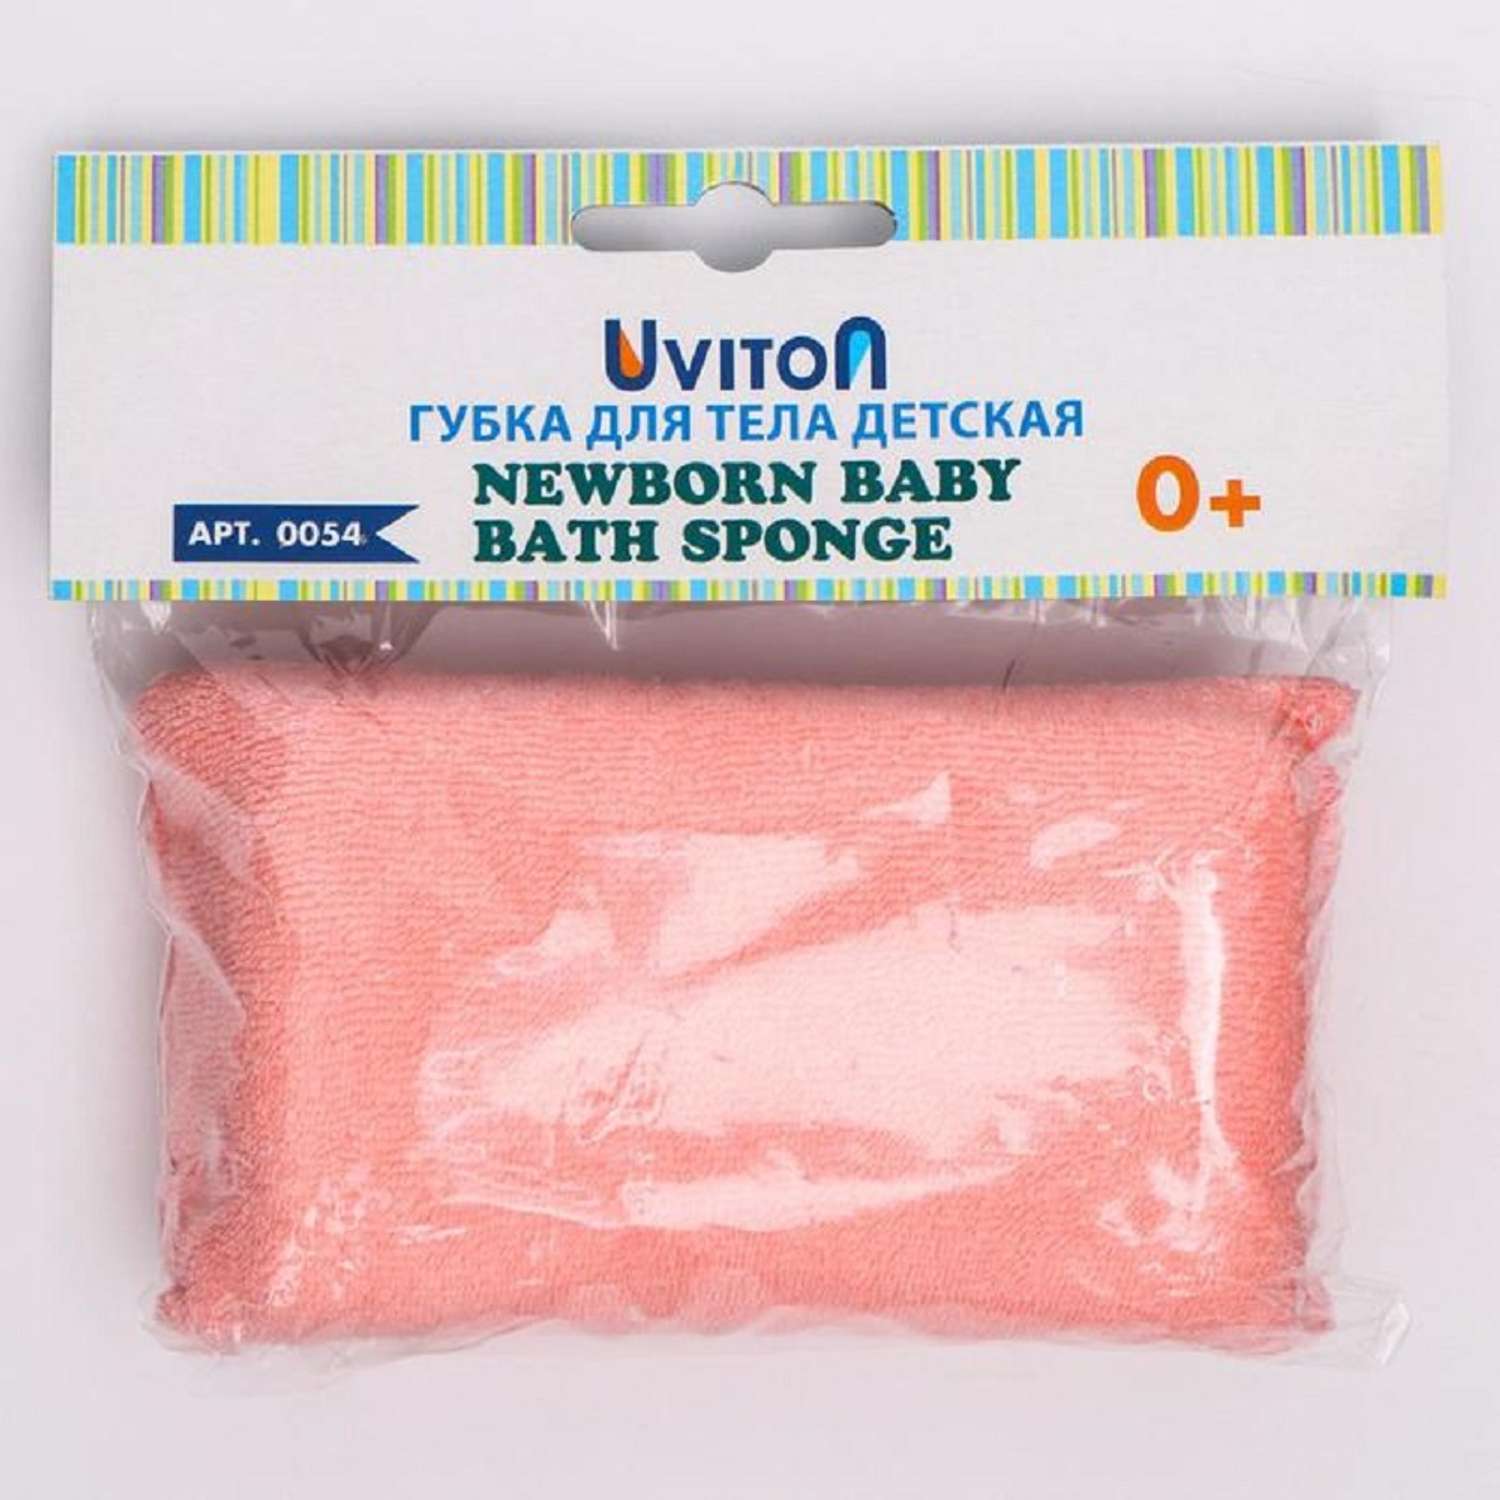 Губка Uviton для купания Breez с покрытием из хлопка розовая - фото 6